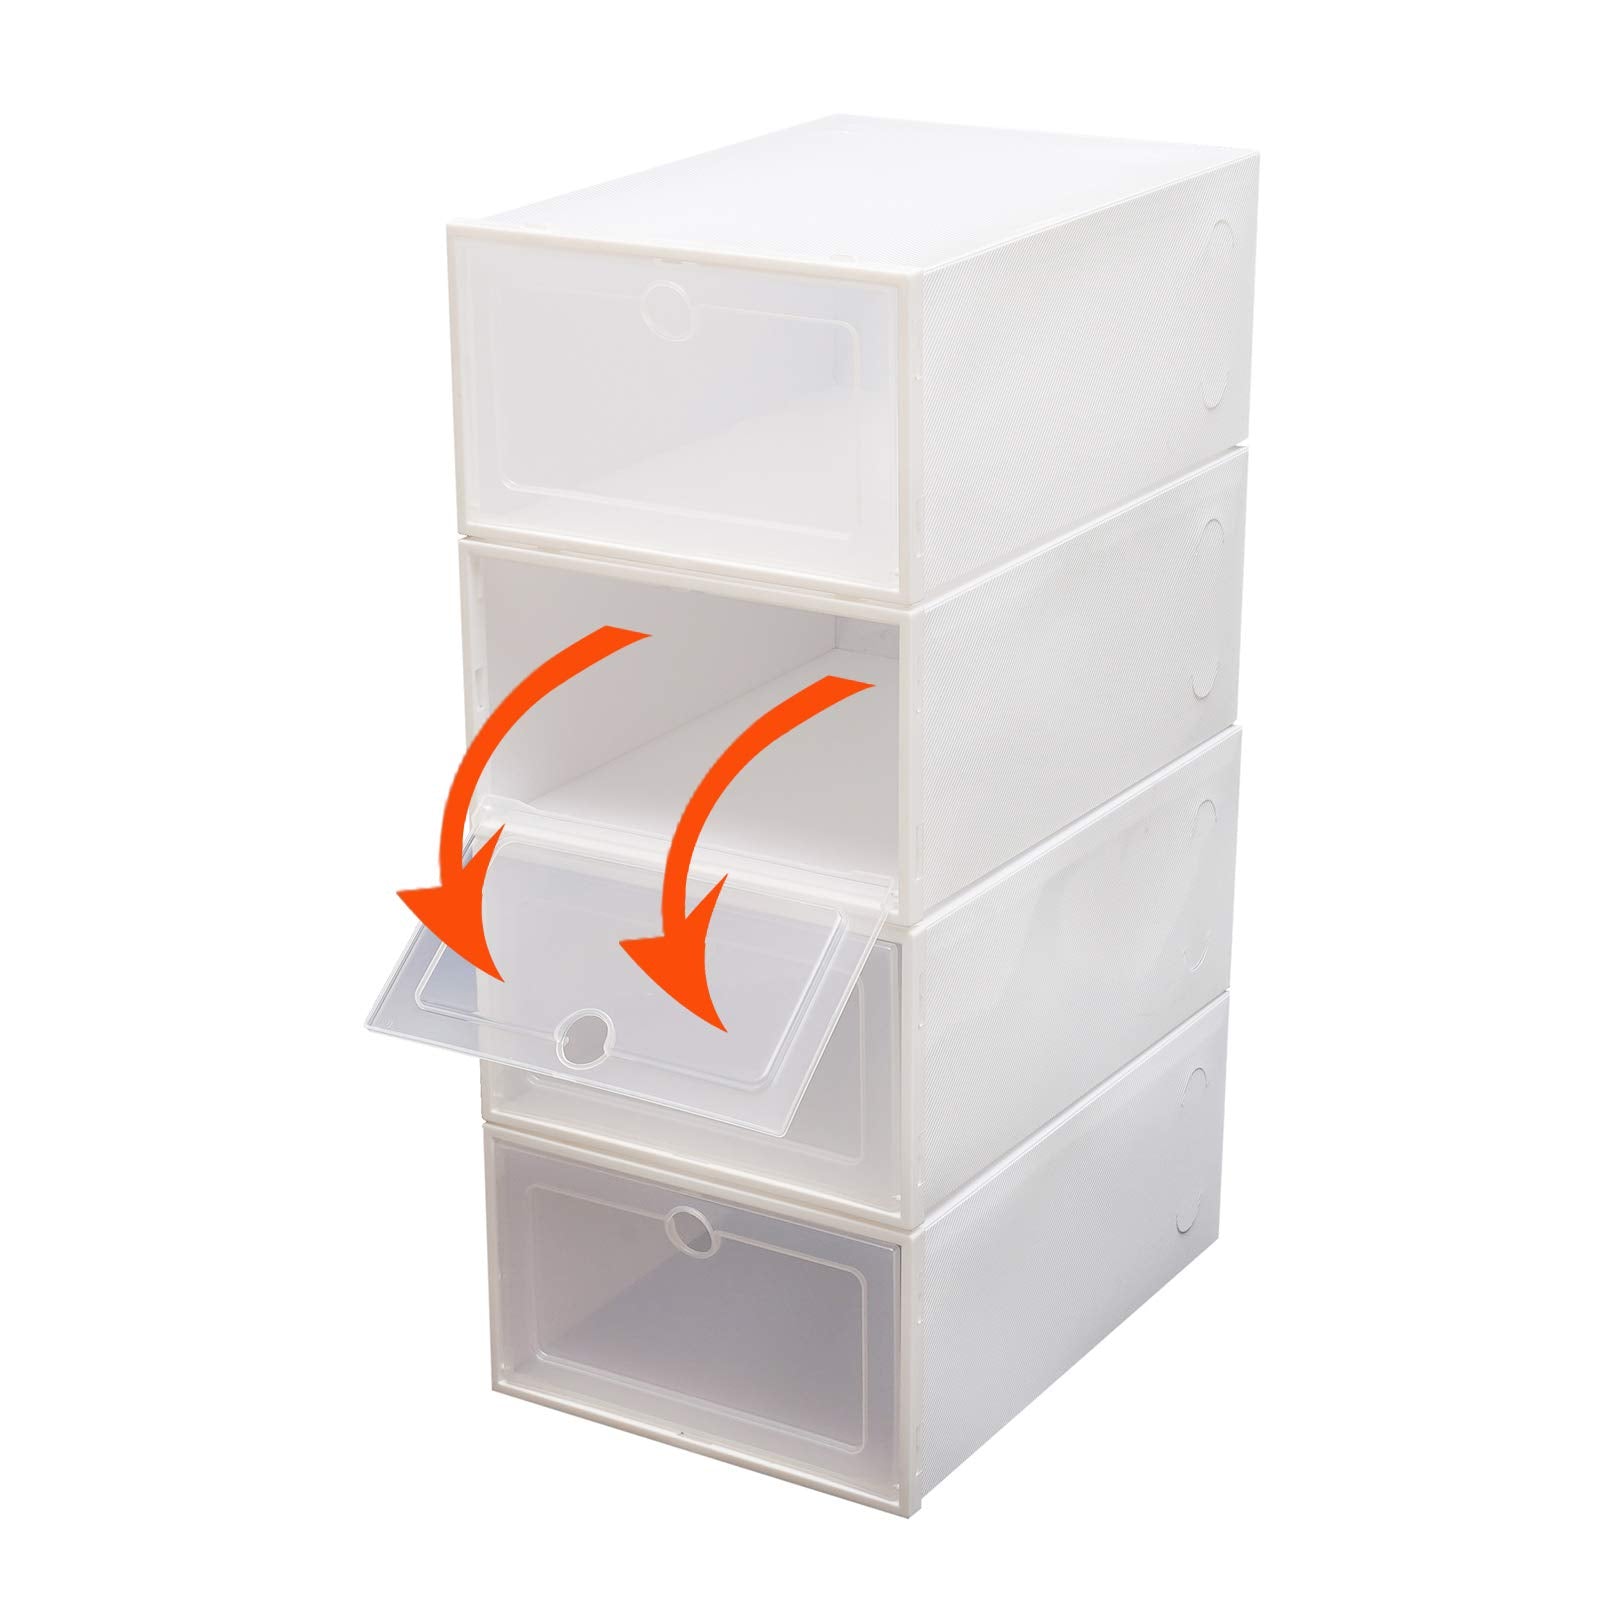 24× Weiße Schuhboxen Transparent Stapelbar Schuhaufbewahrung Box Kunststoff Schuhkarton